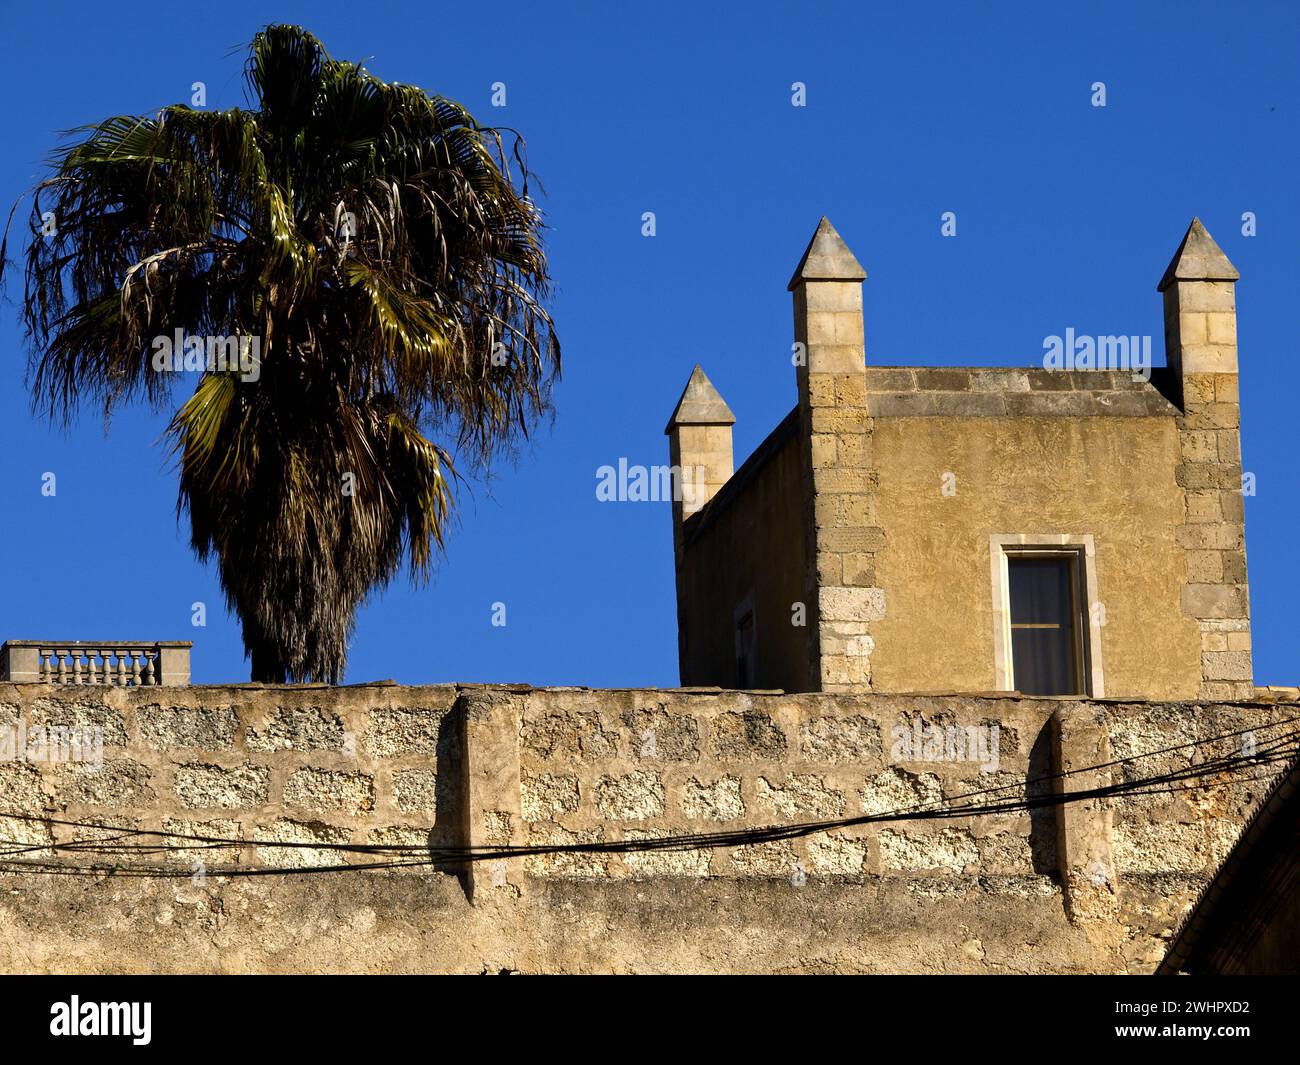 Palacio de los reyes de Mallorca(s.XIV). Sineu. Comarca de Es Pla. Mallorca. Baleares.EspaÃ±a. Stock Photo